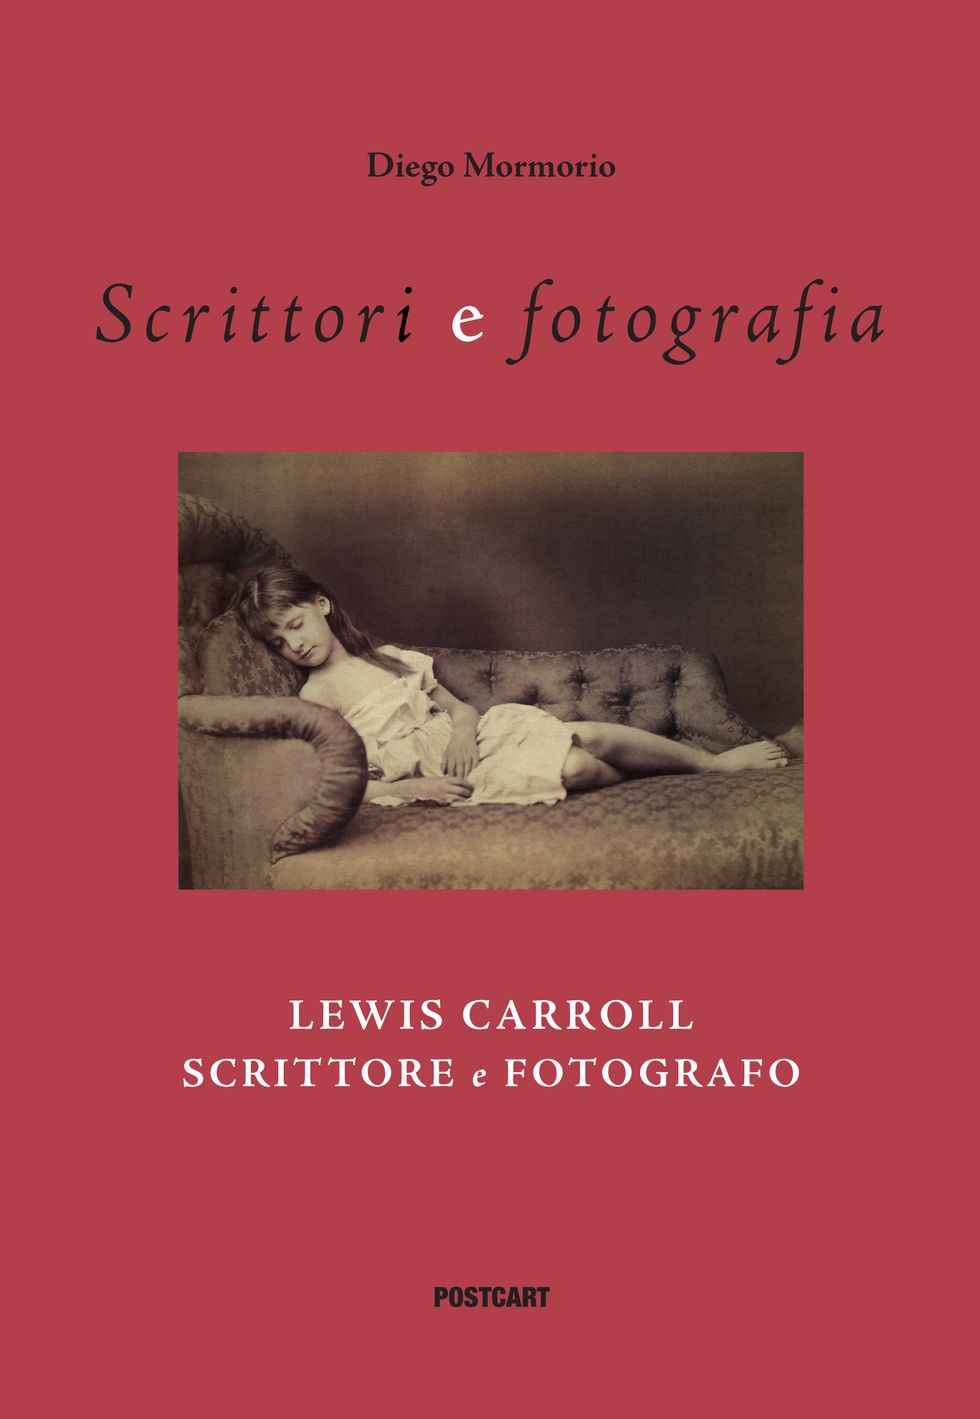 Lewis Carroll, scrittore e fotografo